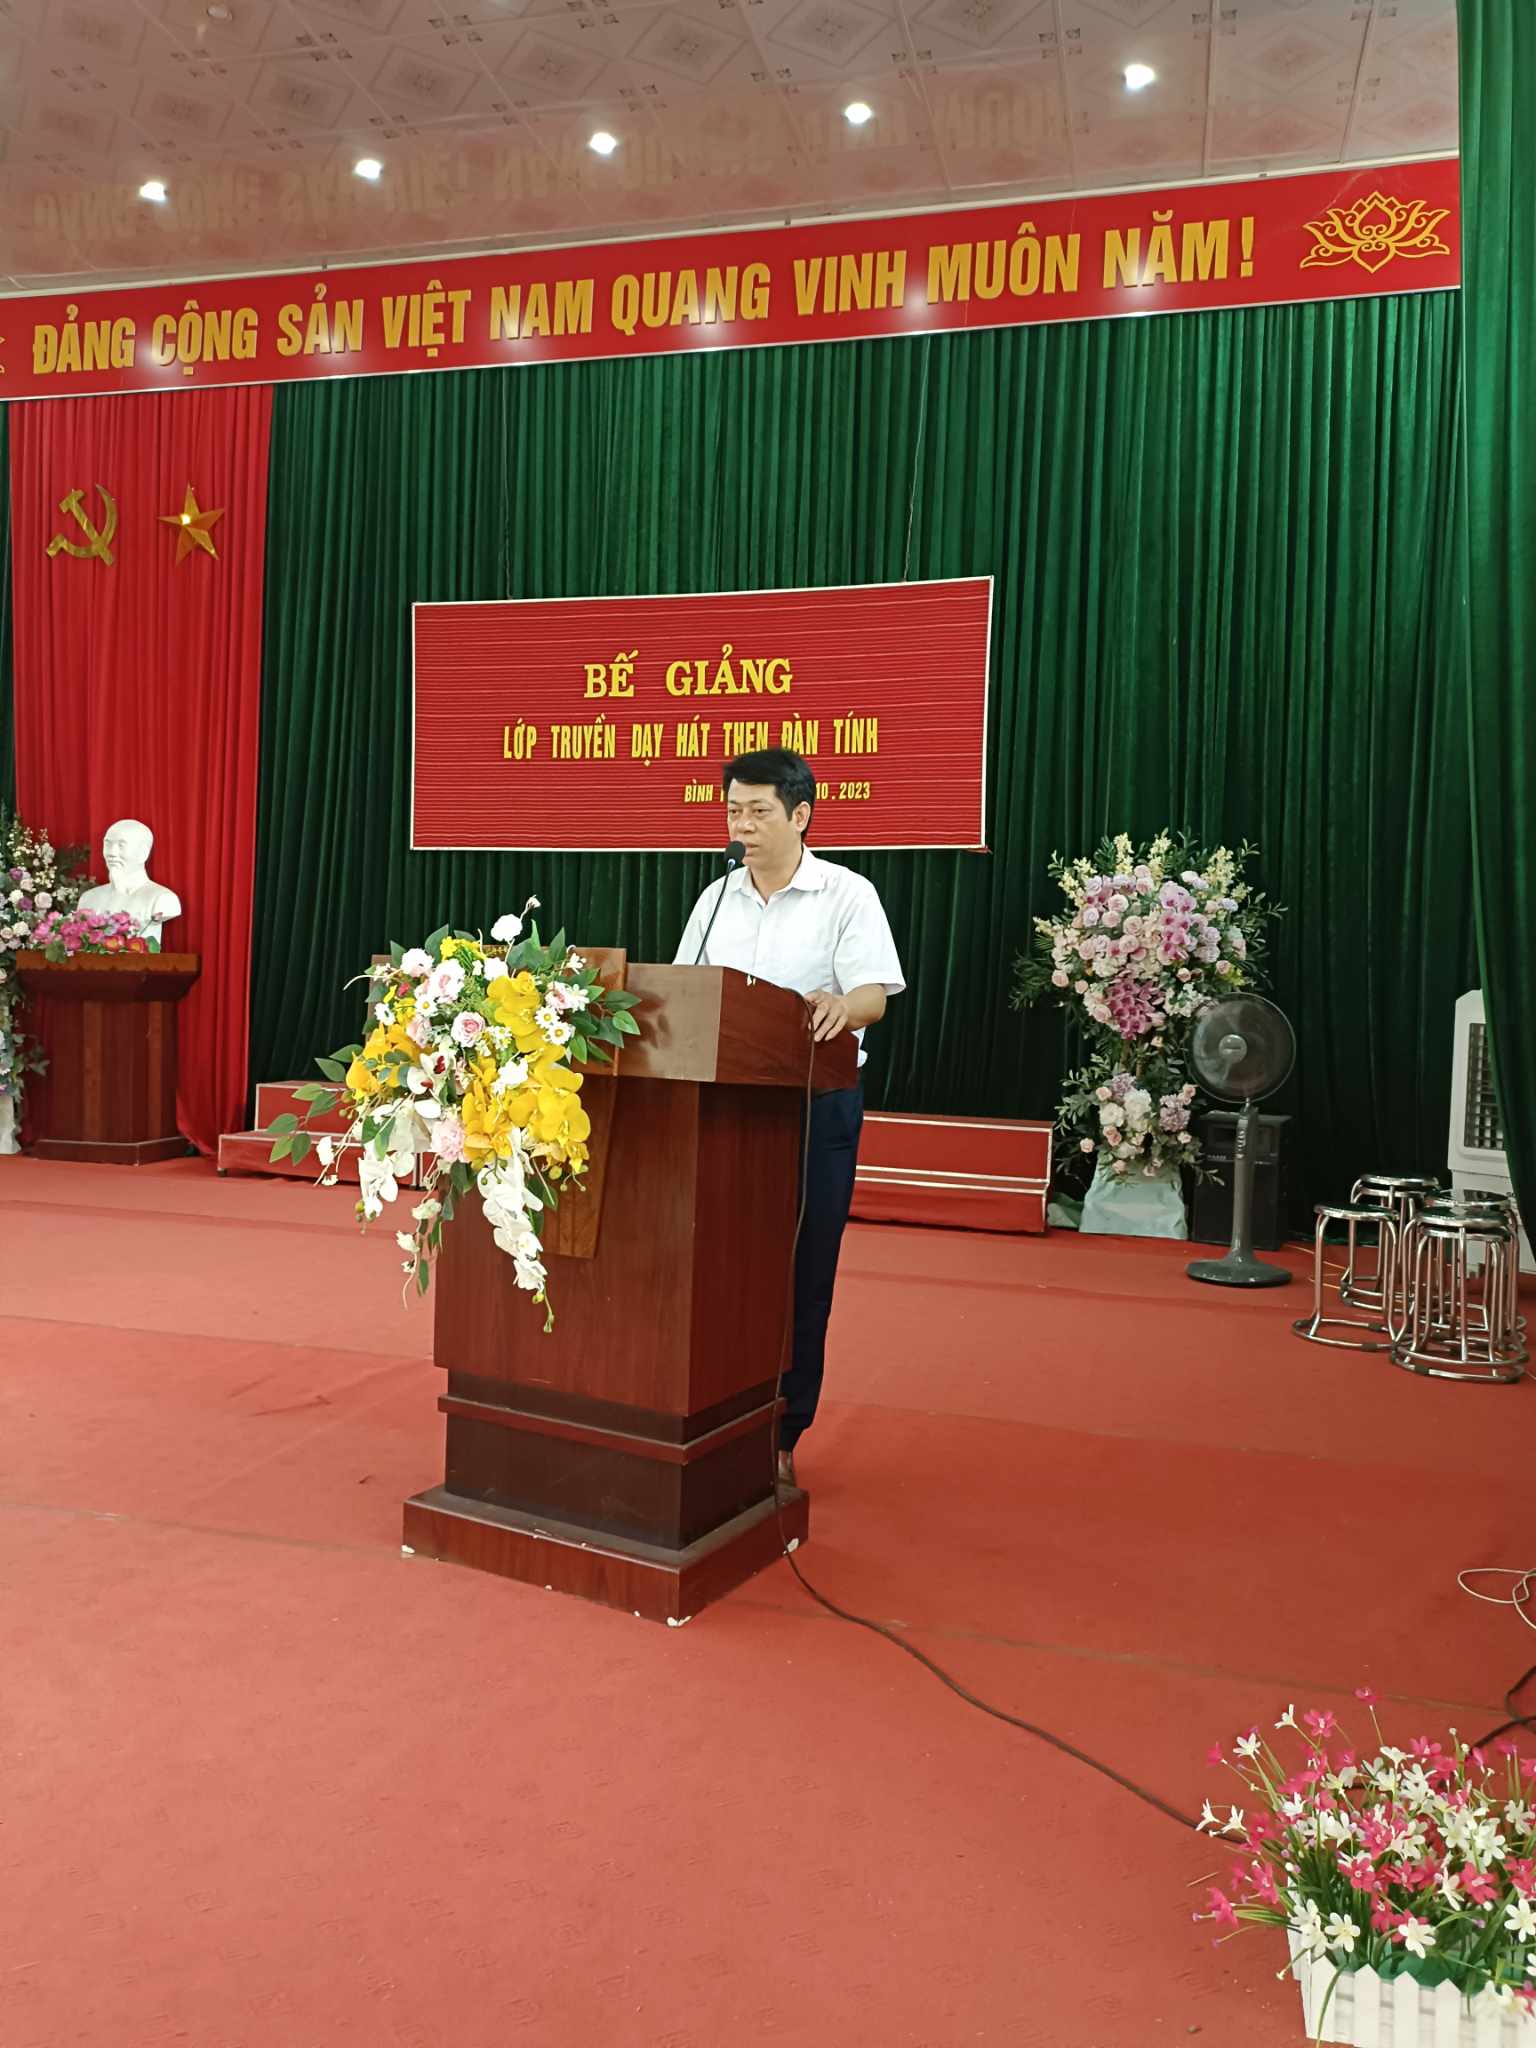 Đ/c Linh vhuyên- Bí thư đảng ủy, chủ tịch UBND xã phát biểu tại buổi bế giảng lớp